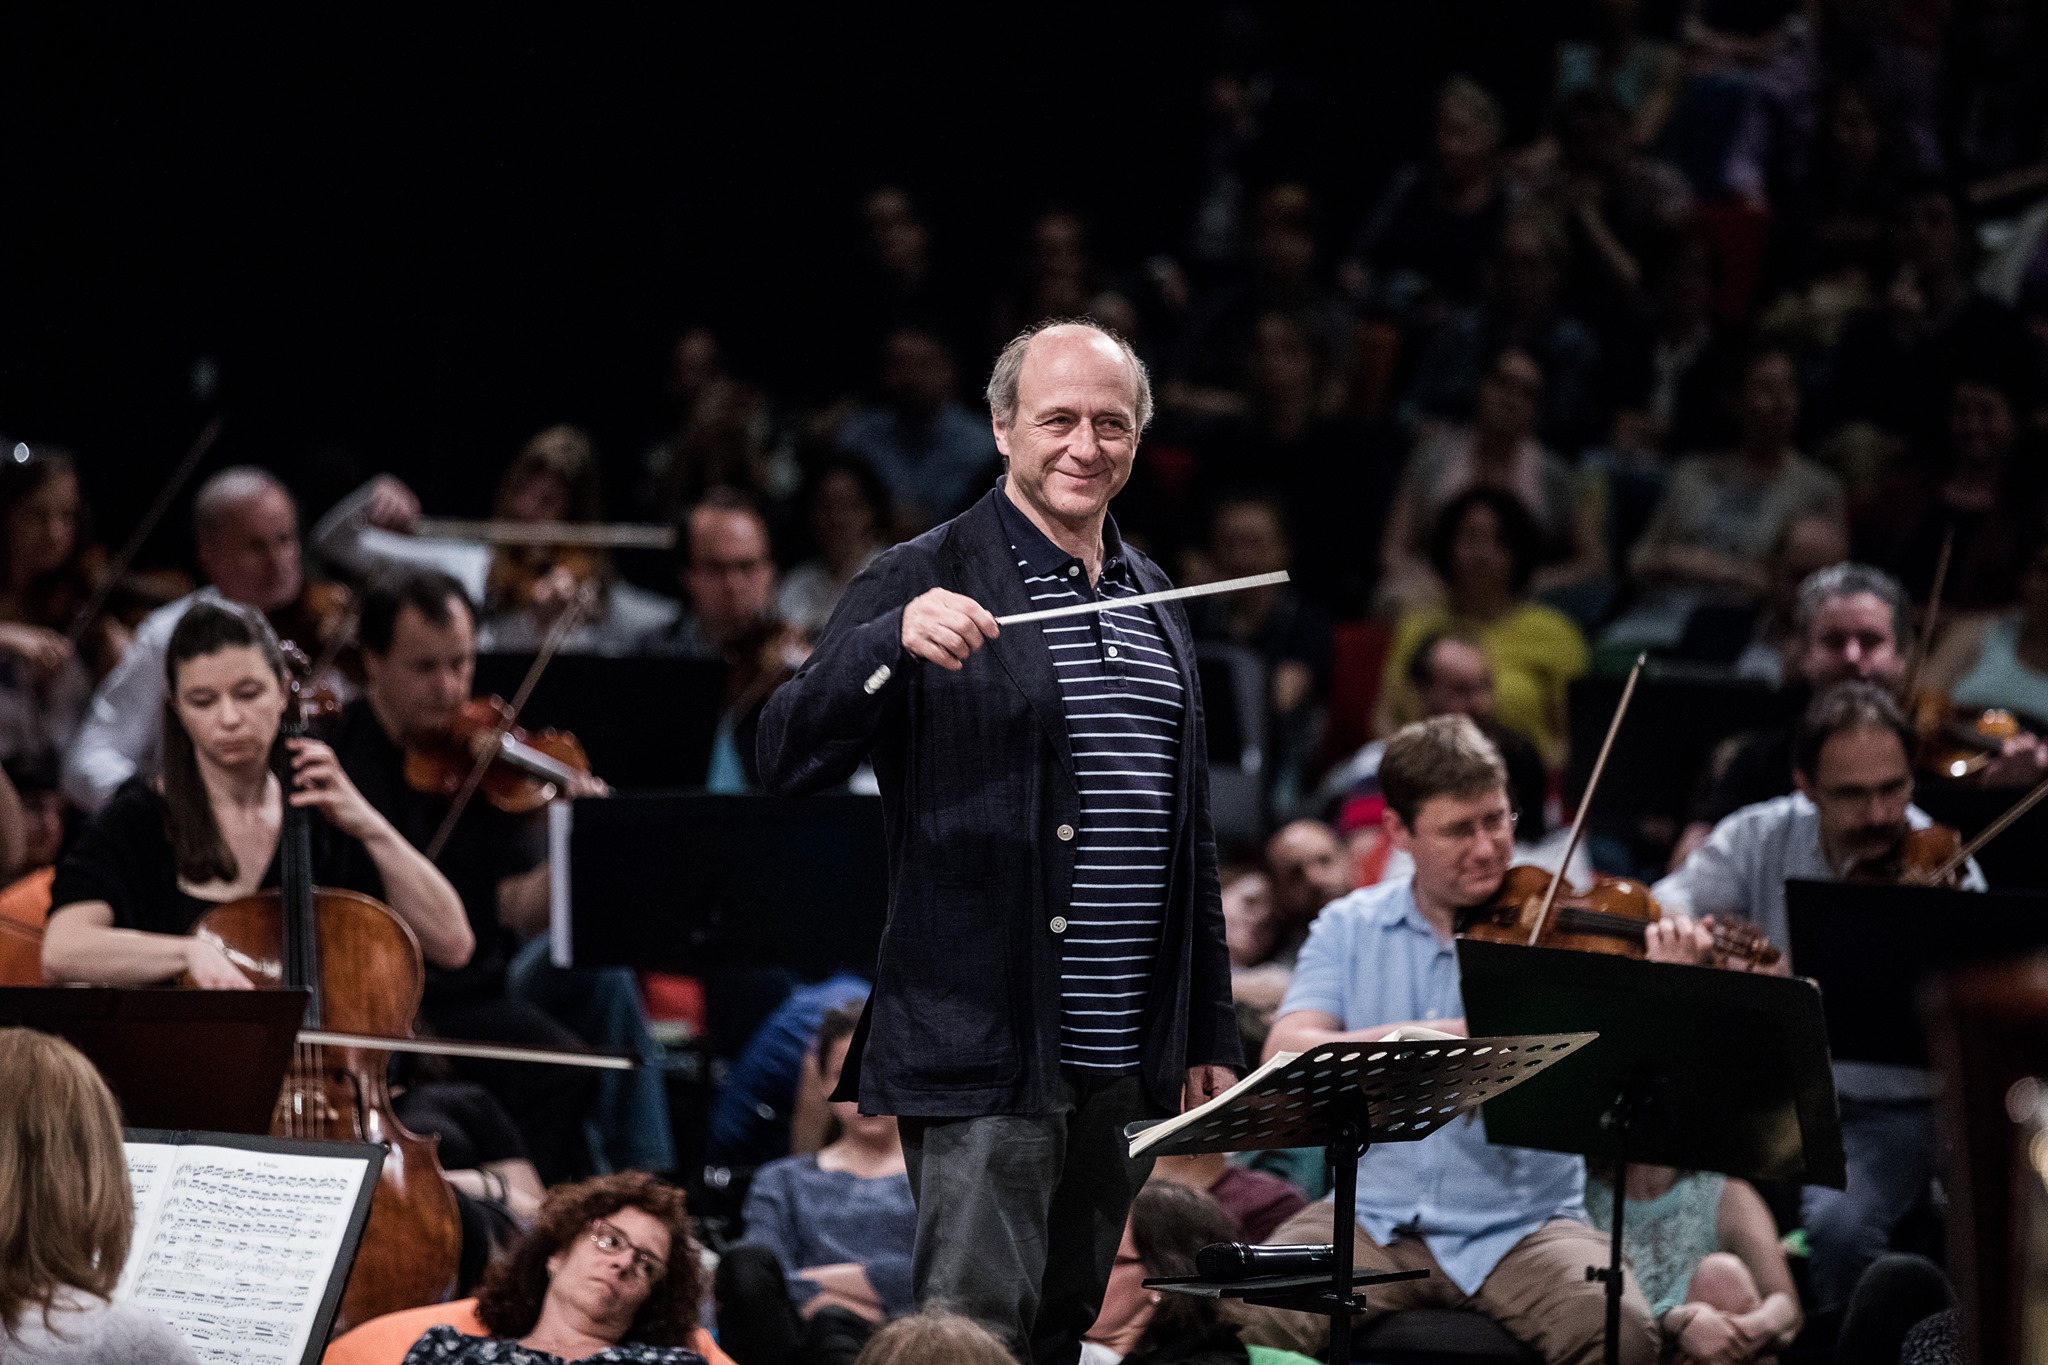 A világ legjobb 10 szimfonikus zenekara közé választották a Budapesti Fesztiválzenekart